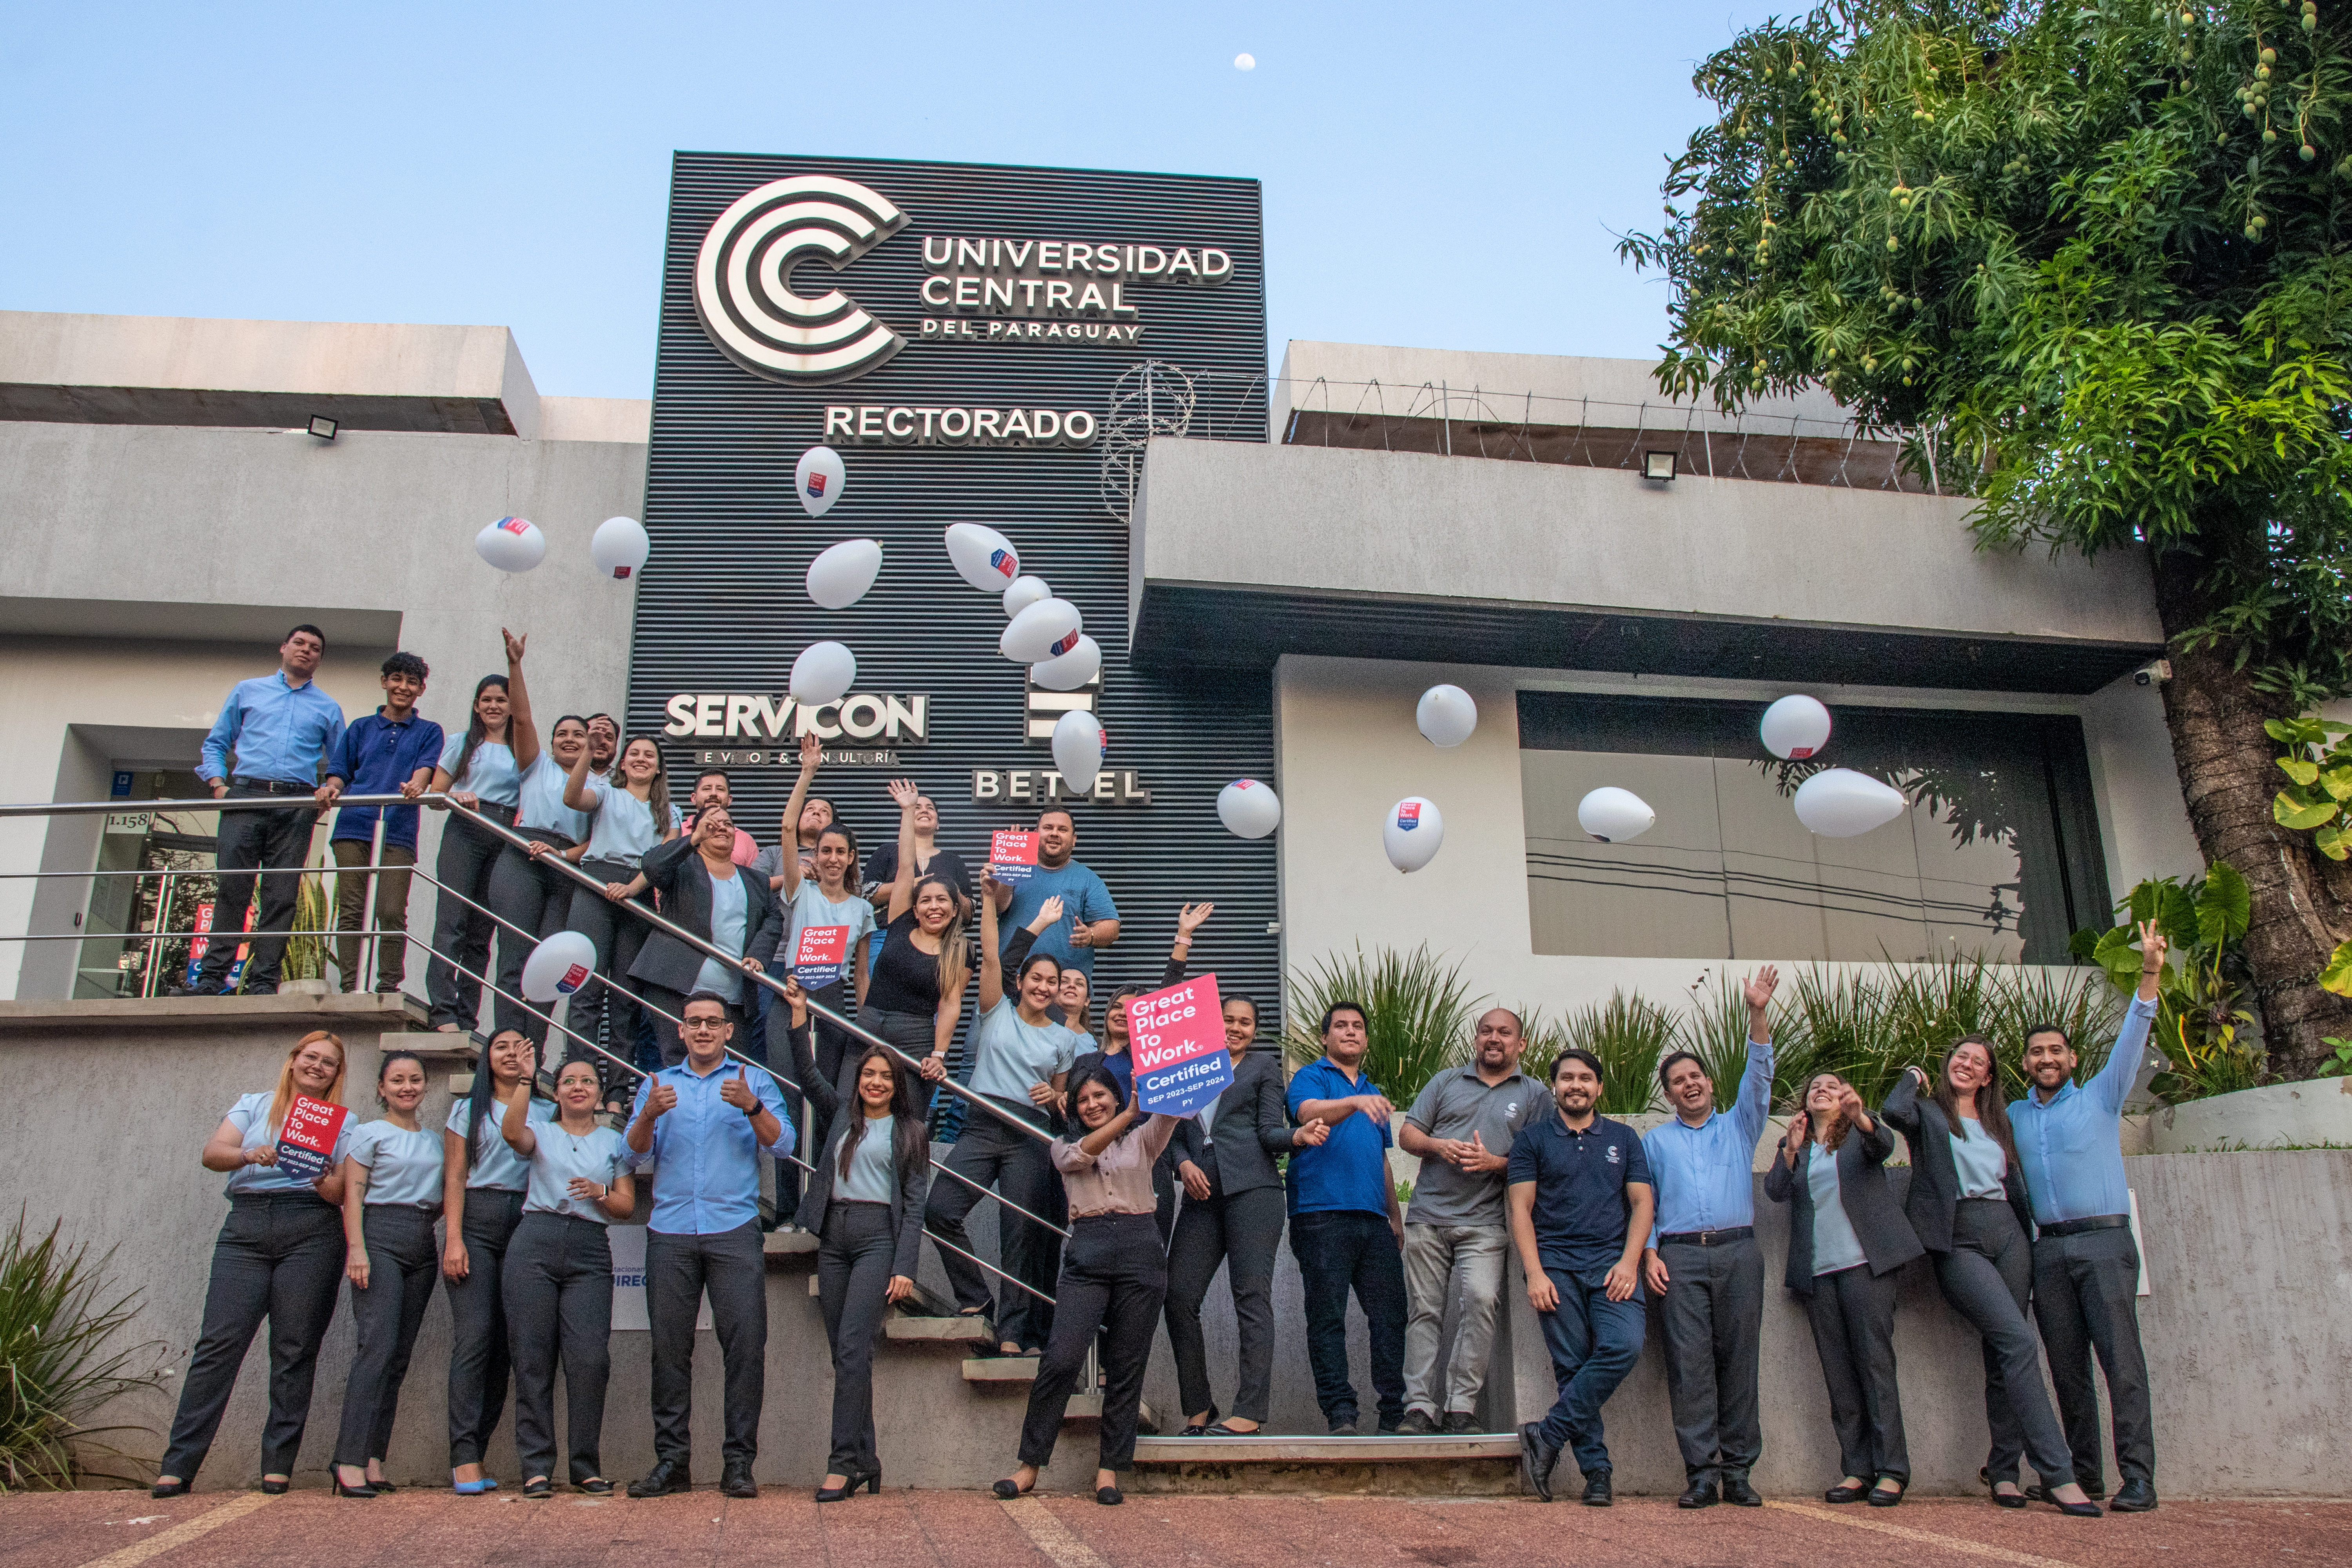 La Universidad Central del Paraguay Obtiene la Certificación 'Great Place to Work' en Reconocimiento a su Excelencia Laboral